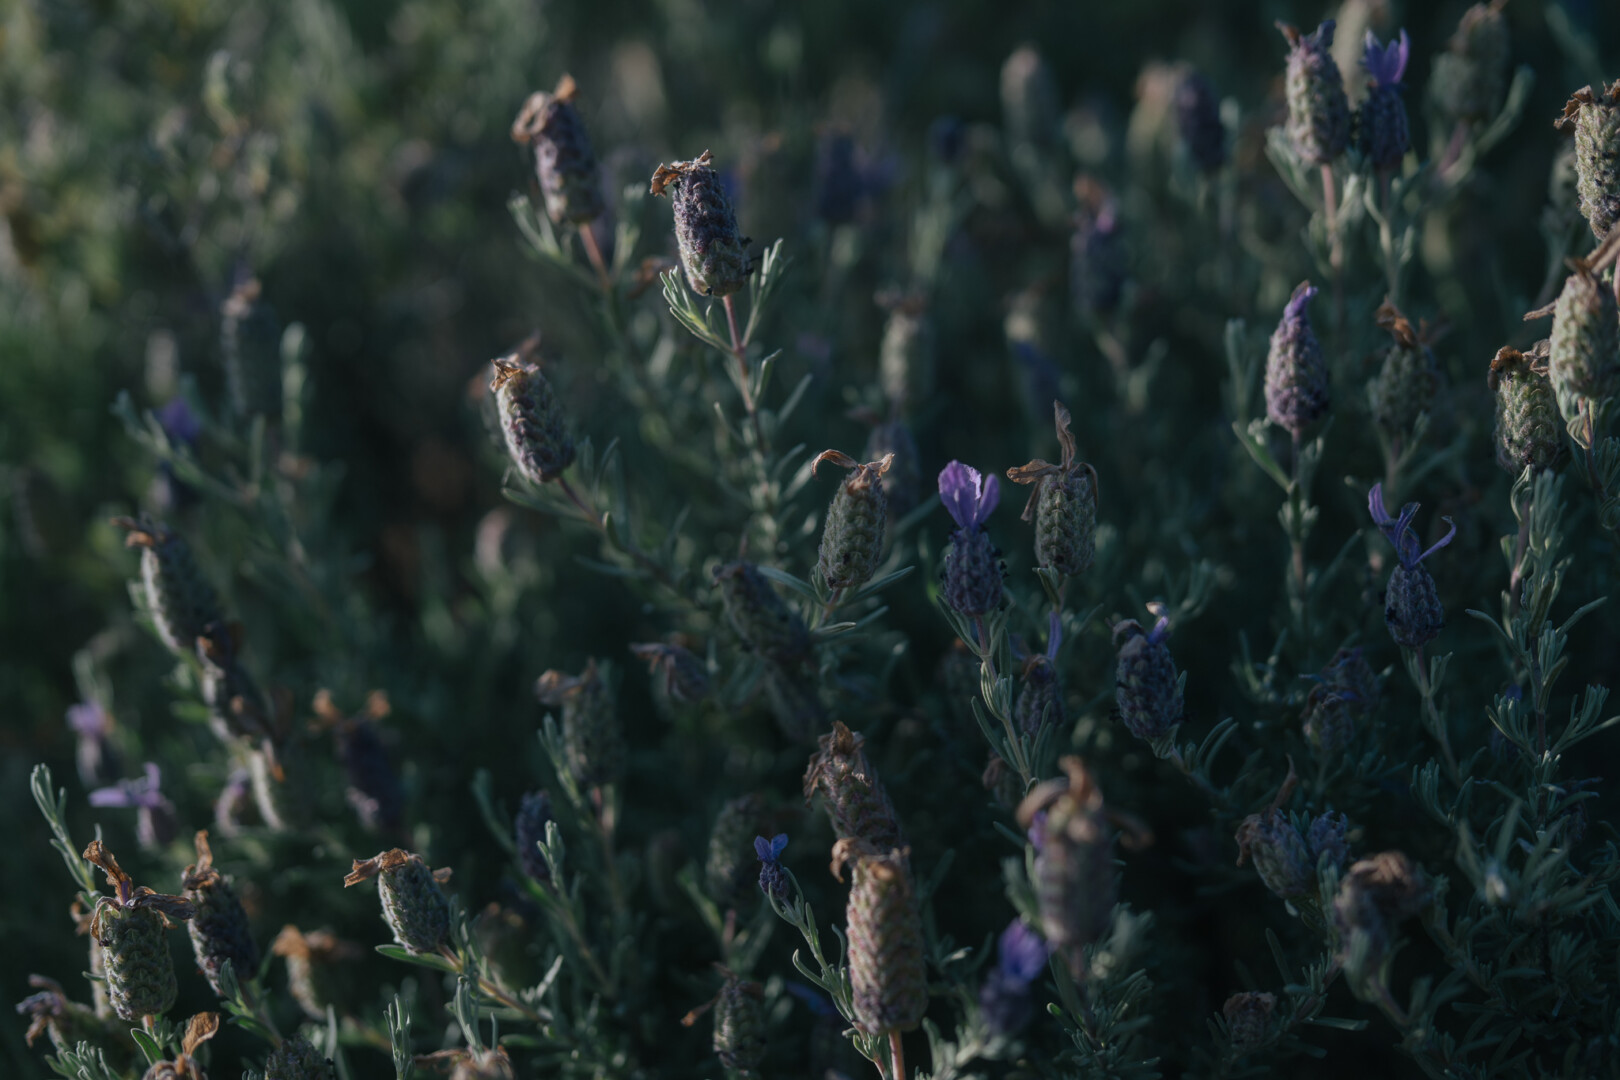 Wild lavender